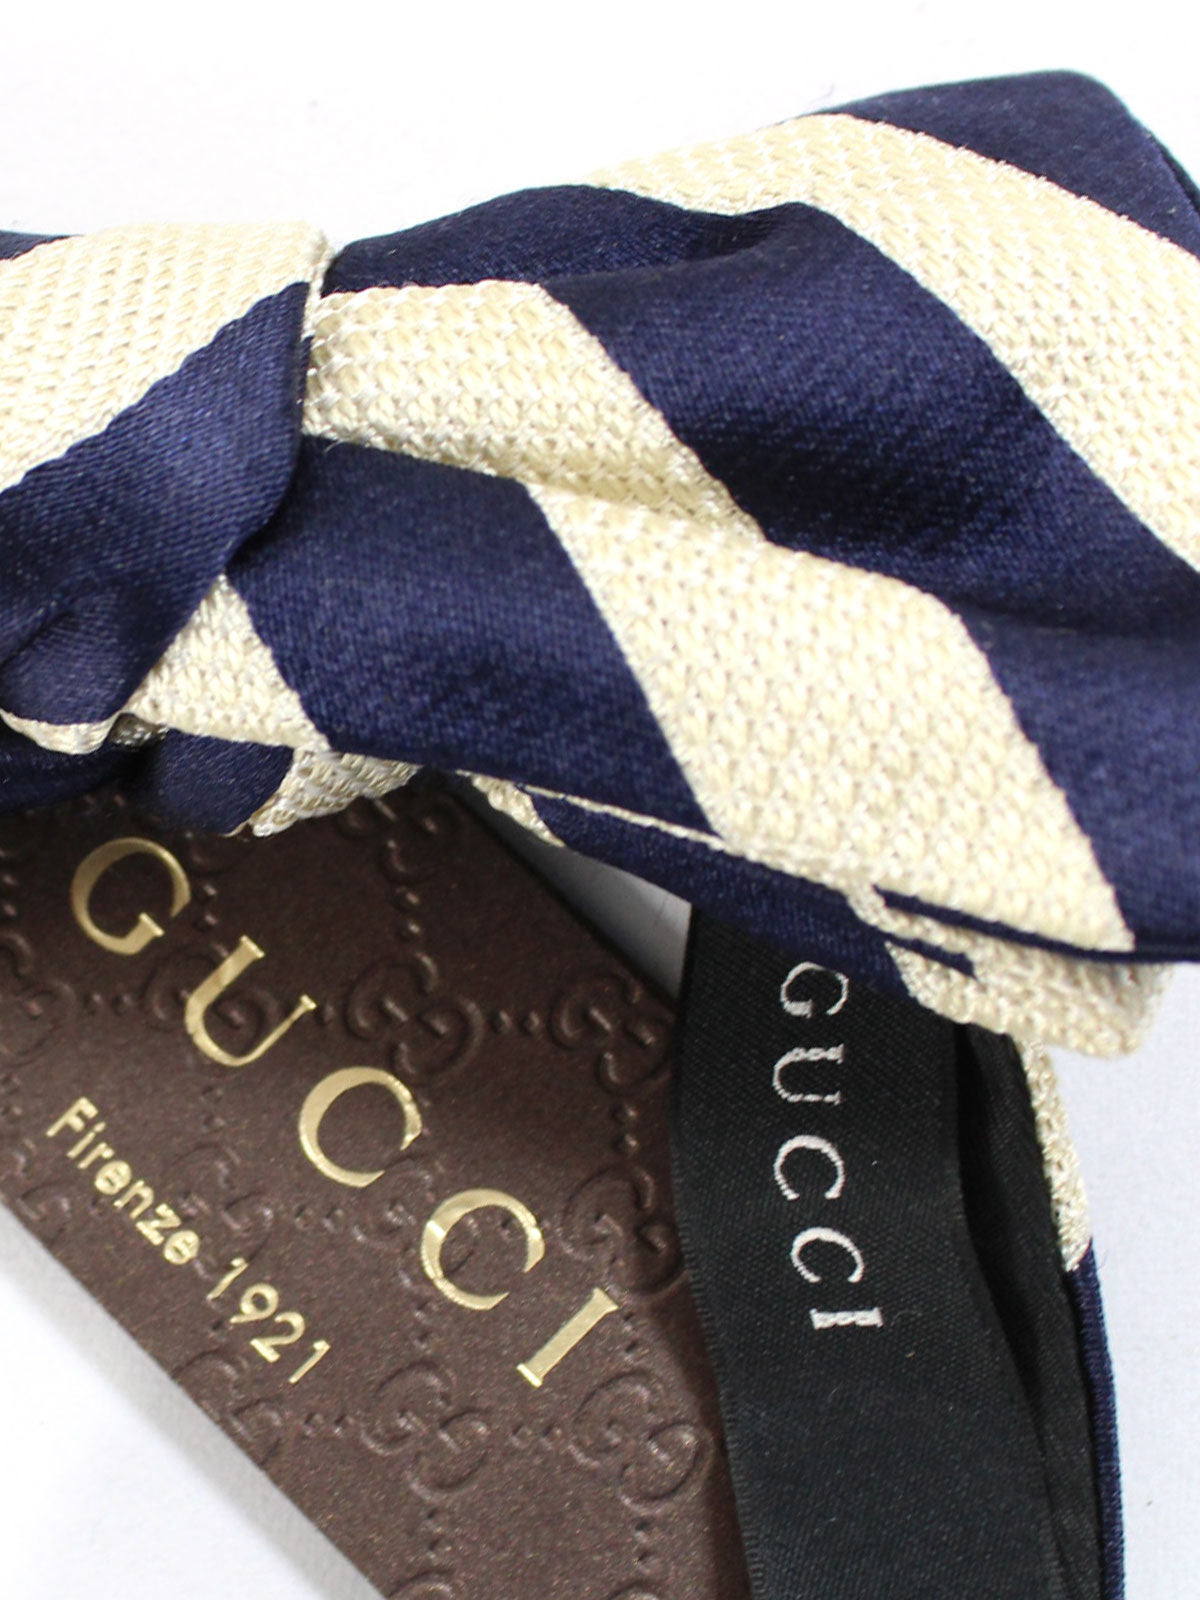 Gucci Bow Tie Navy Silver Stripes Design - Self Tie Bow Tie